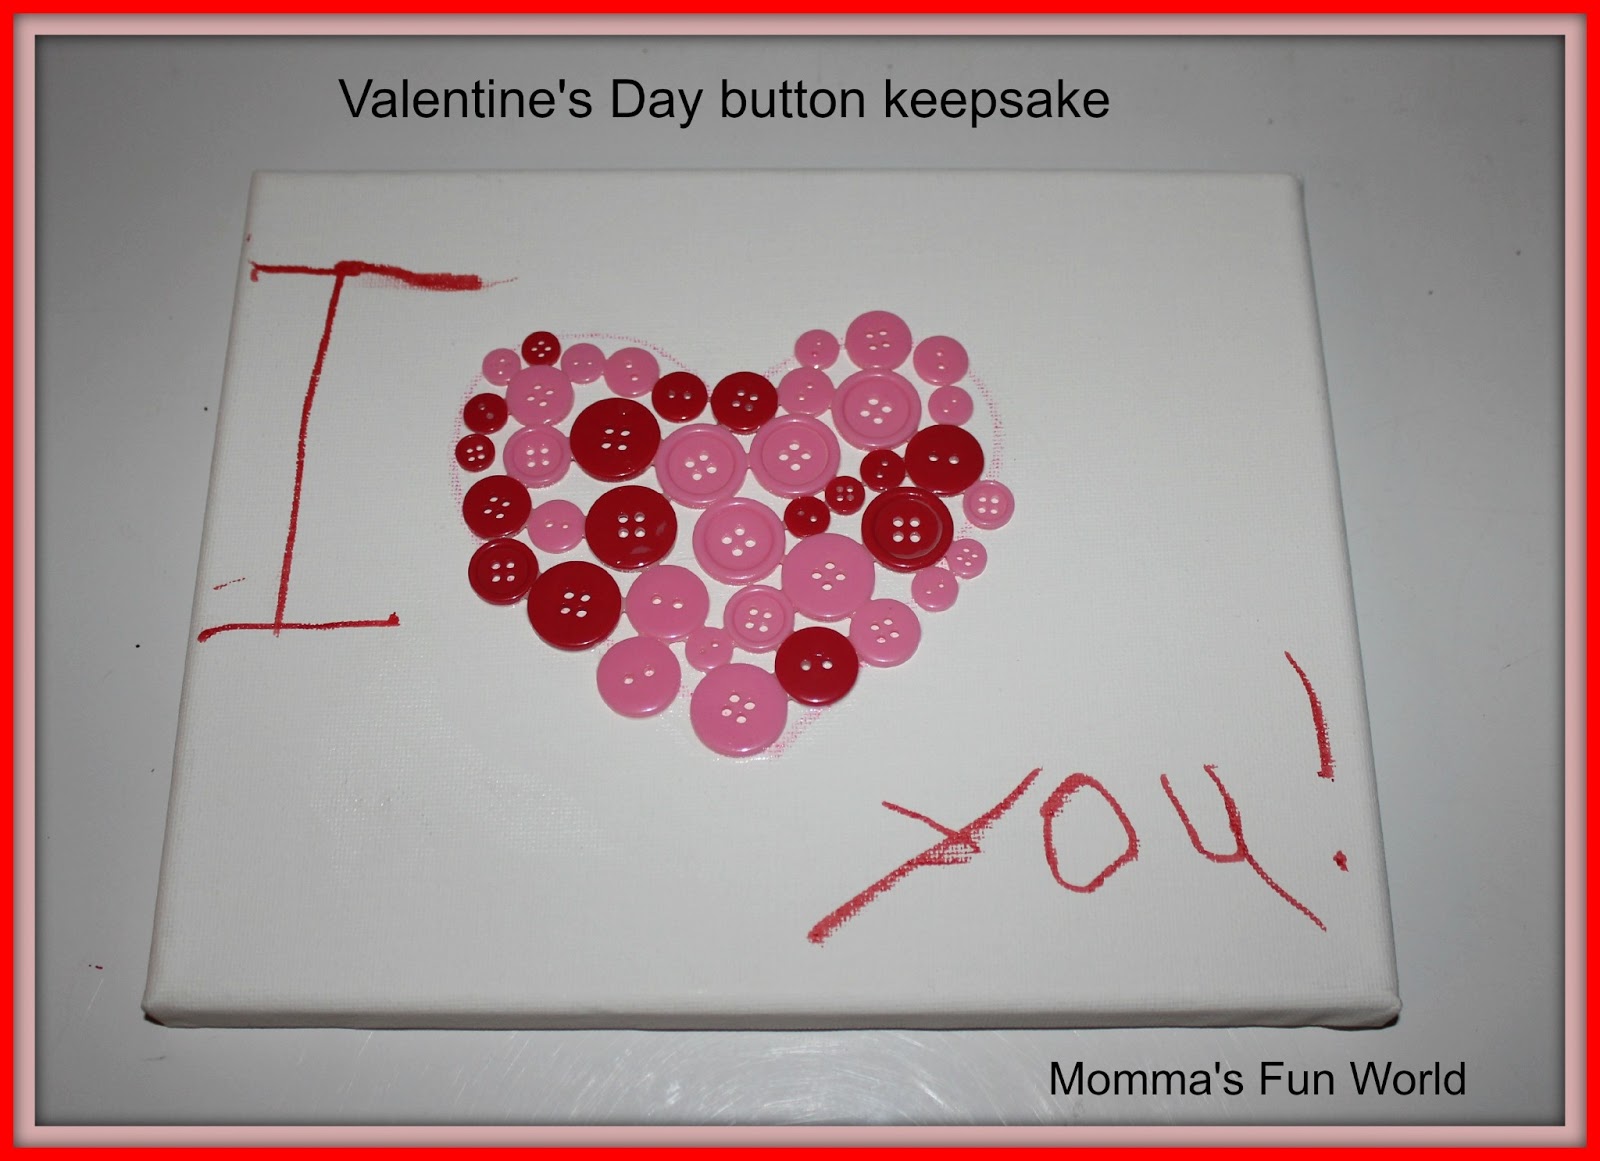 Momma's Fun World: Valentine's Day button canvas keepsake1600 x 1161